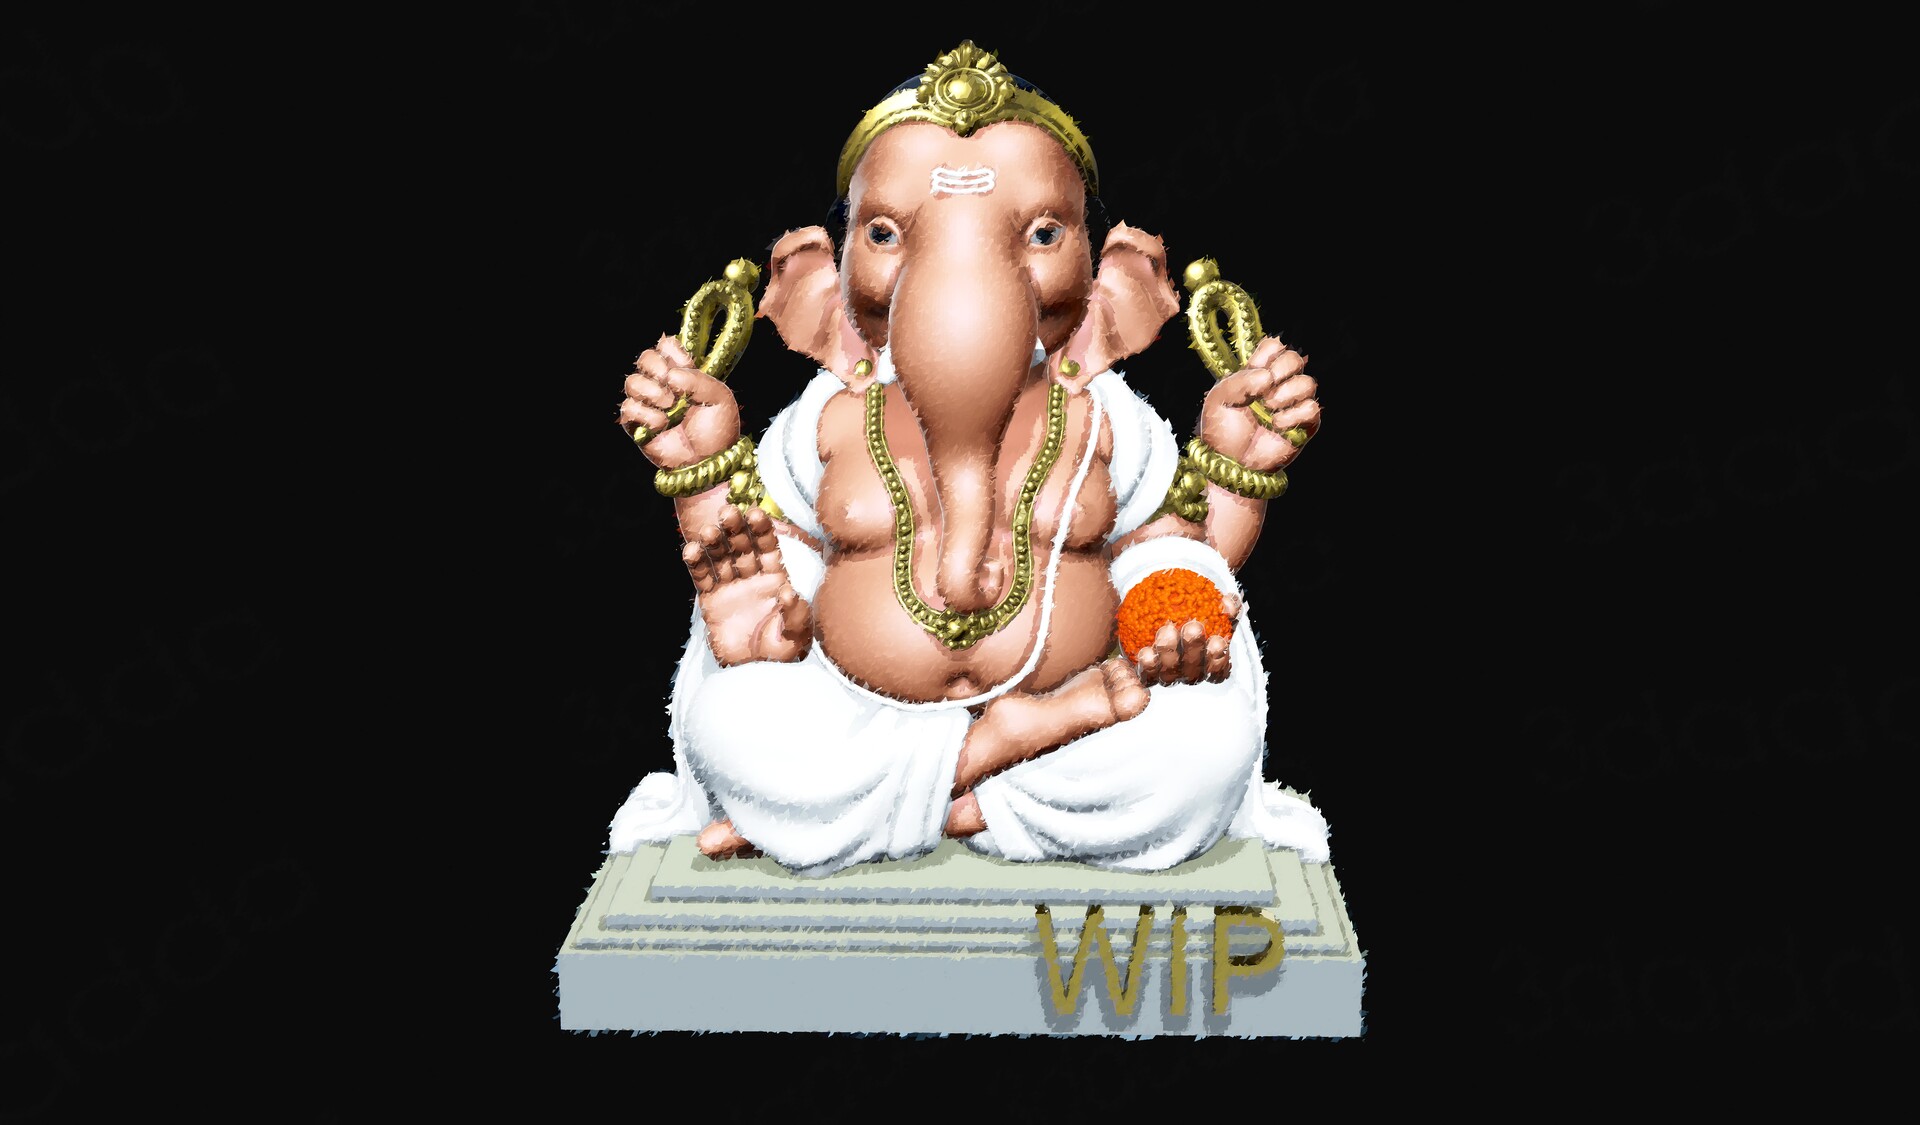 ArtStation - Ganesh 3D model for 3D printing